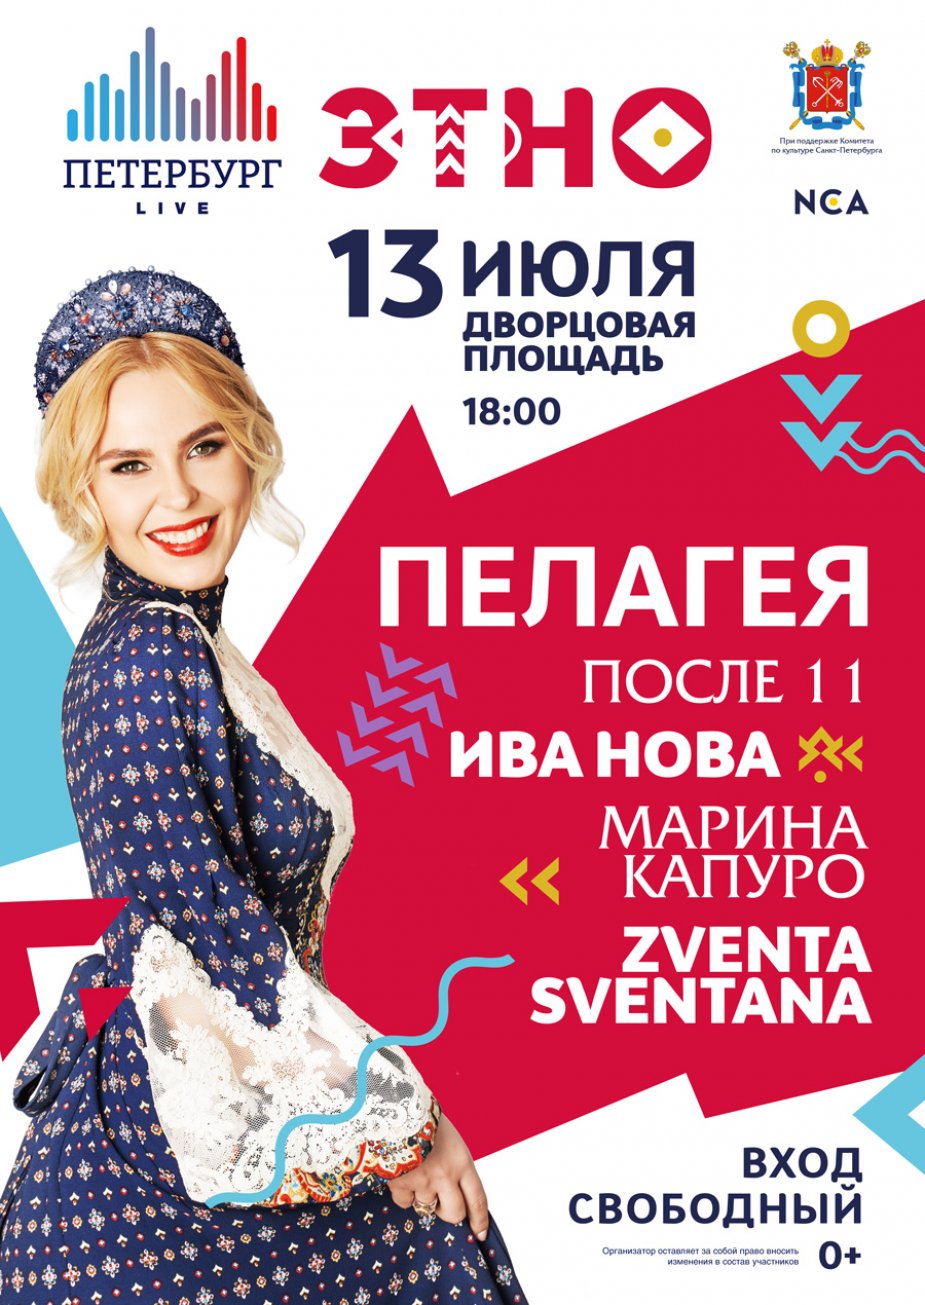 Музыкальный фестиваль «Петербург live». Дворцовая площадь